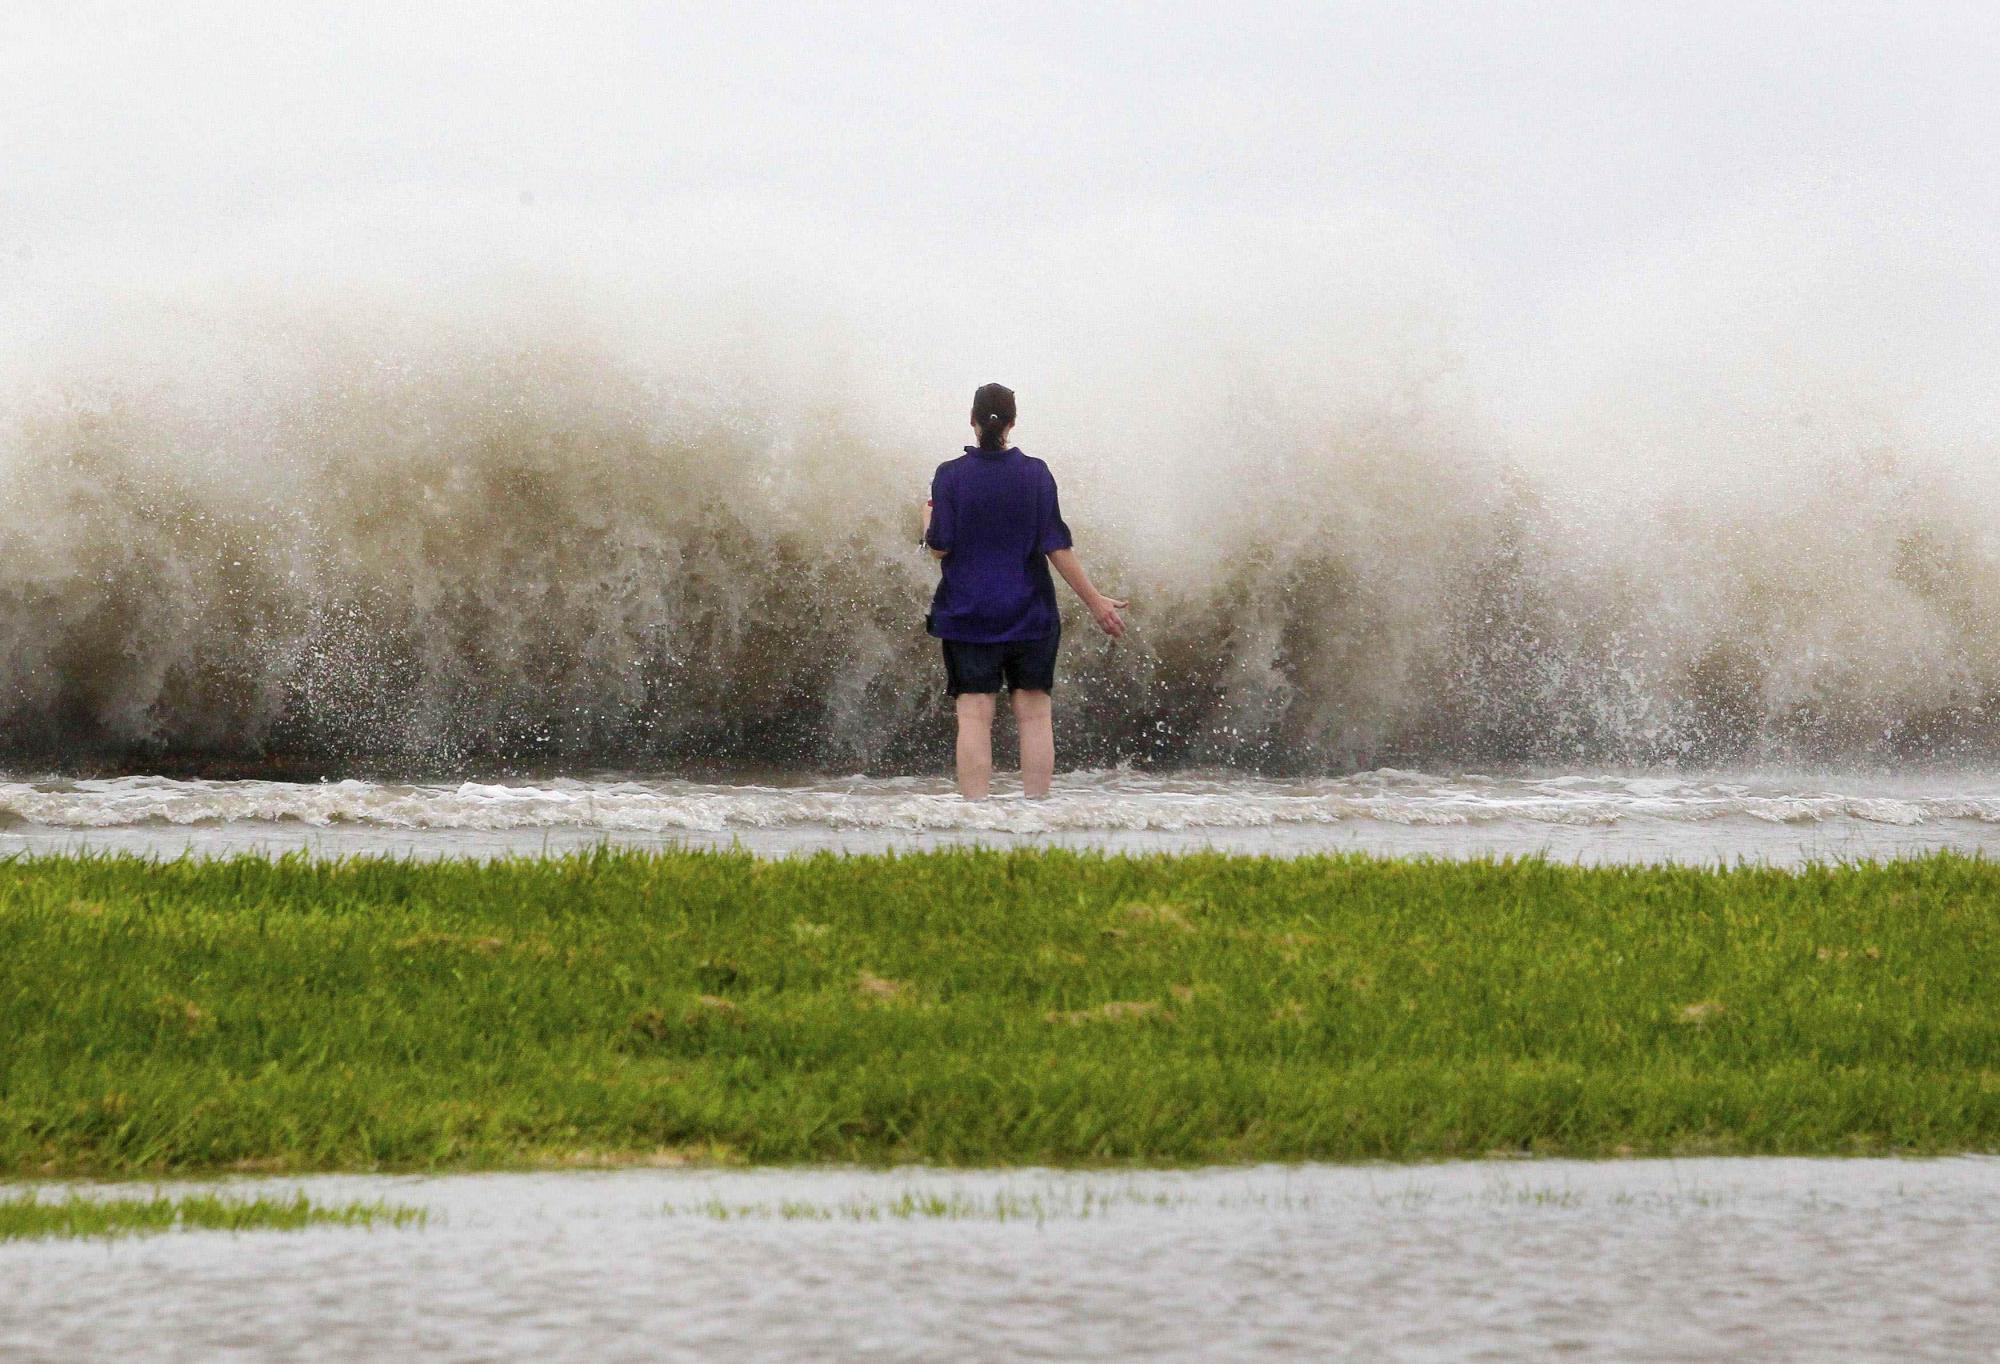 “艾萨克”增强为一级飓风登美 全球最大防洪系统面临大考[1]- 中文国际